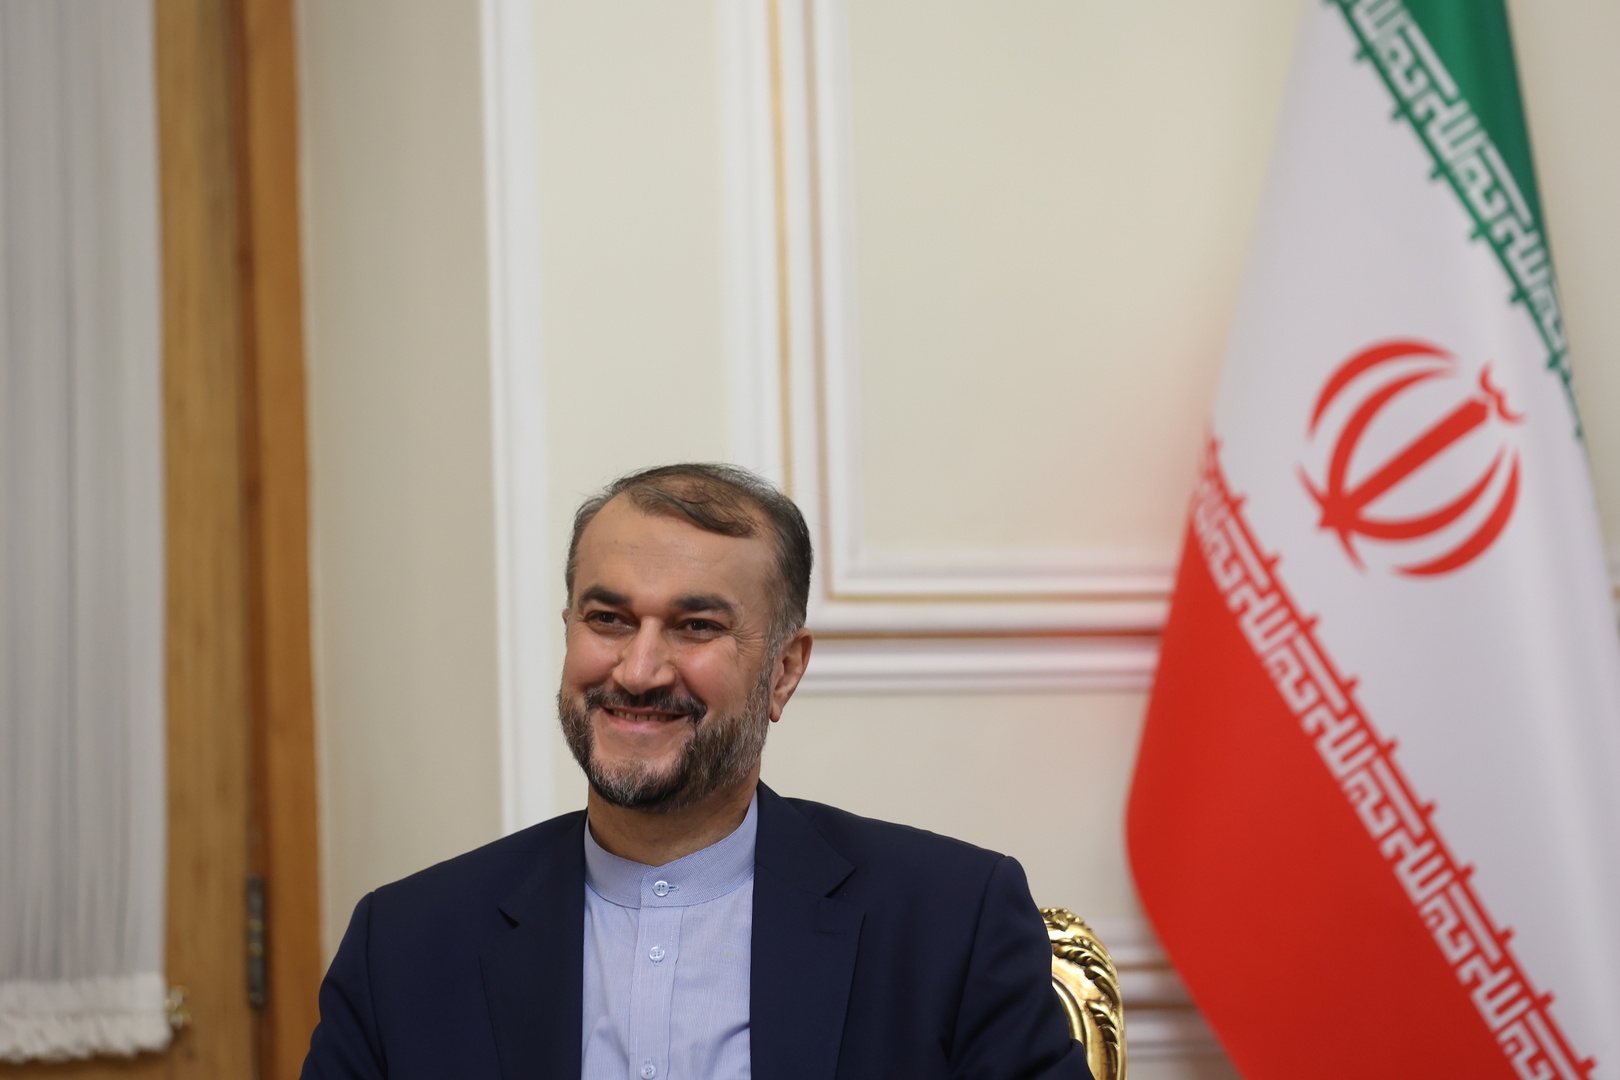 طهران: هدفنا من مفاوضات فيينا رفع جميع العقوبات التي فرضتها واشنطن بعد انسحابها